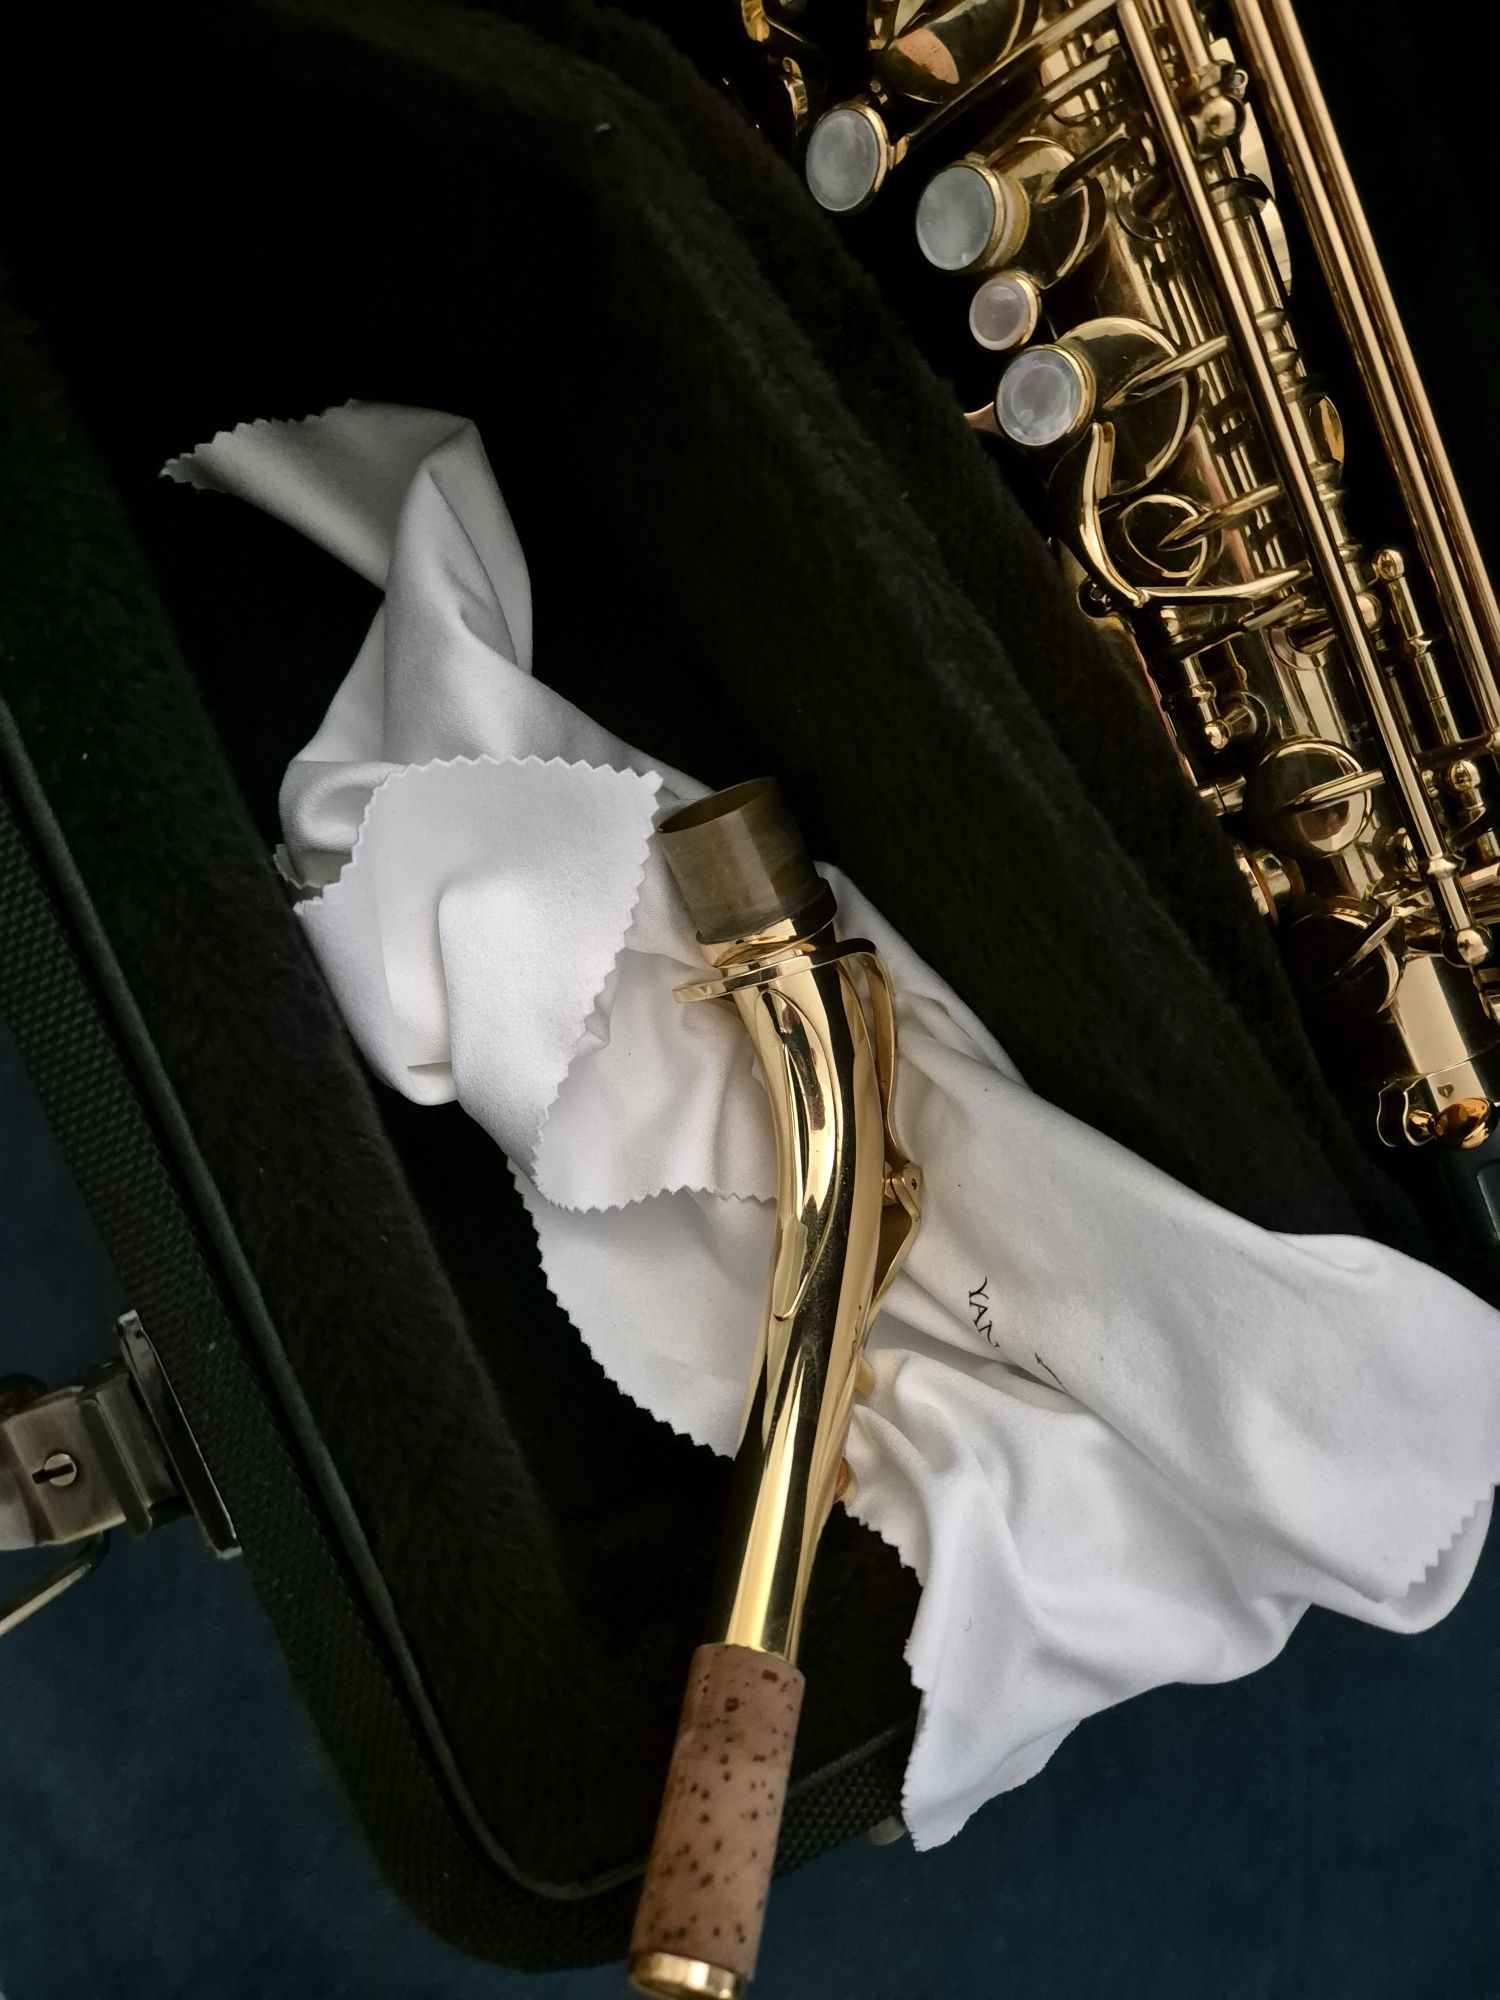 Saxofon Yanagisawa w01 nou